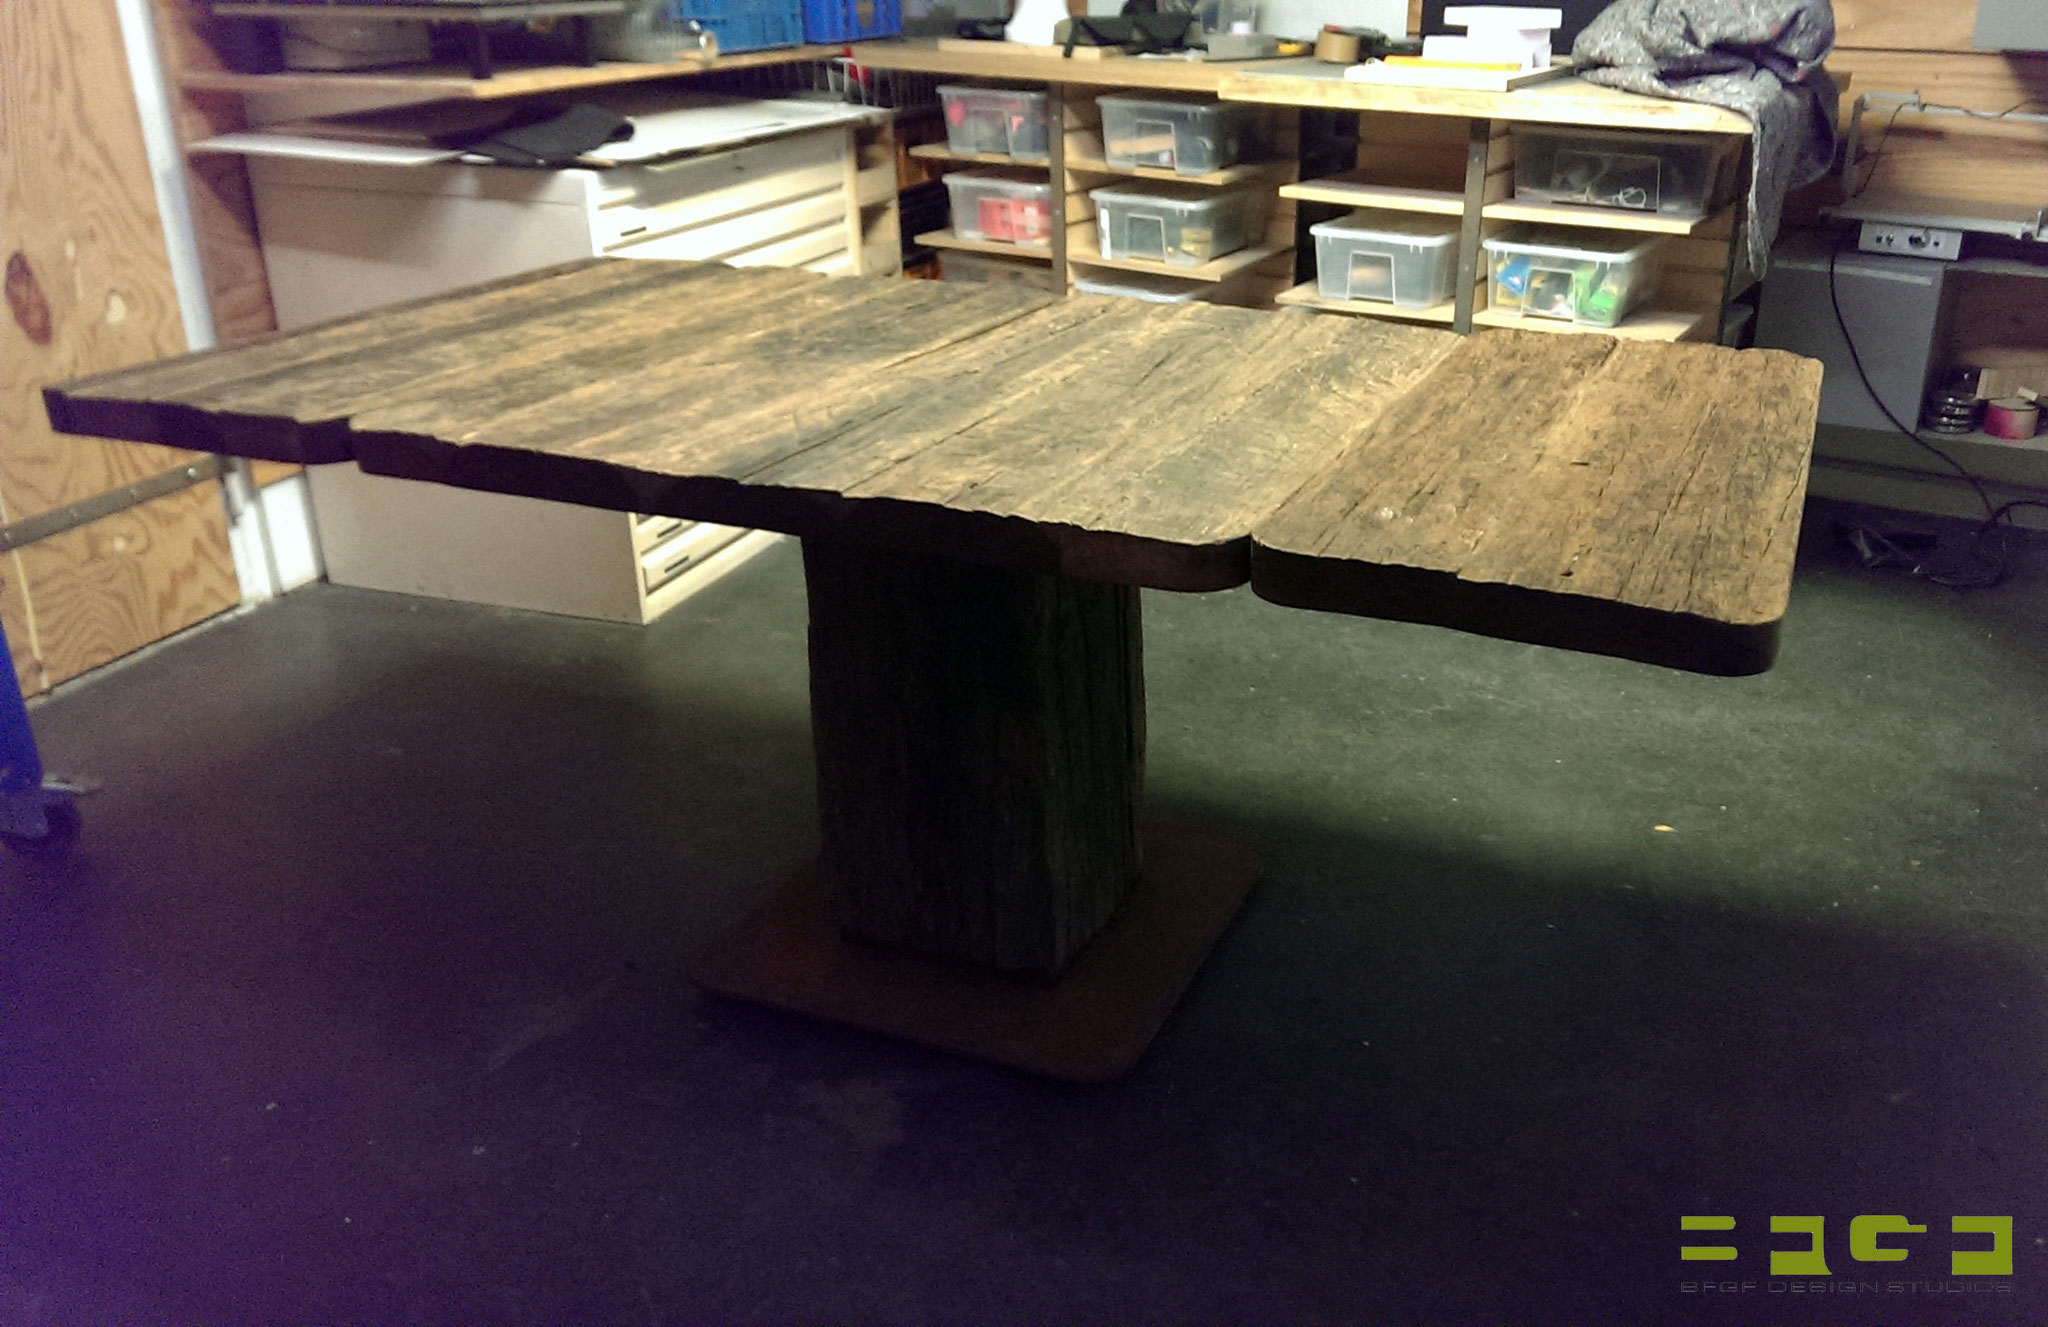 Ausfertigung mit erweiterten Tischflächen